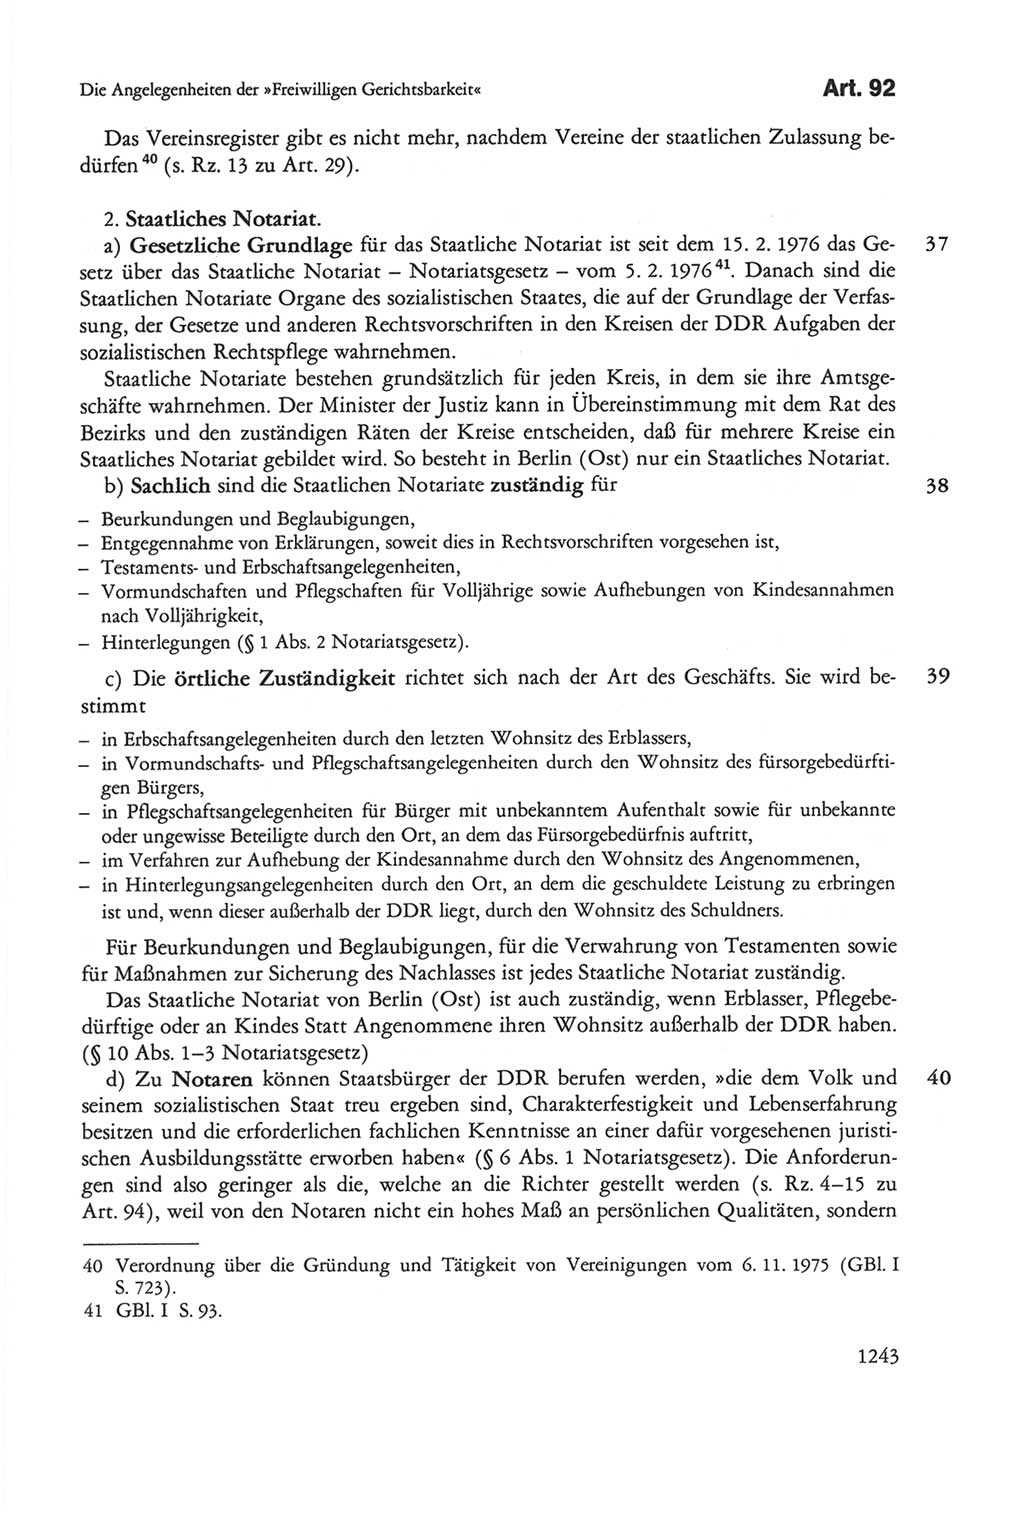 Die sozialistische Verfassung der Deutschen Demokratischen Republik (DDR), Kommentar mit einem Nachtrag 1997, Seite 1243 (Soz. Verf. DDR Komm. Nachtr. 1997, S. 1243)